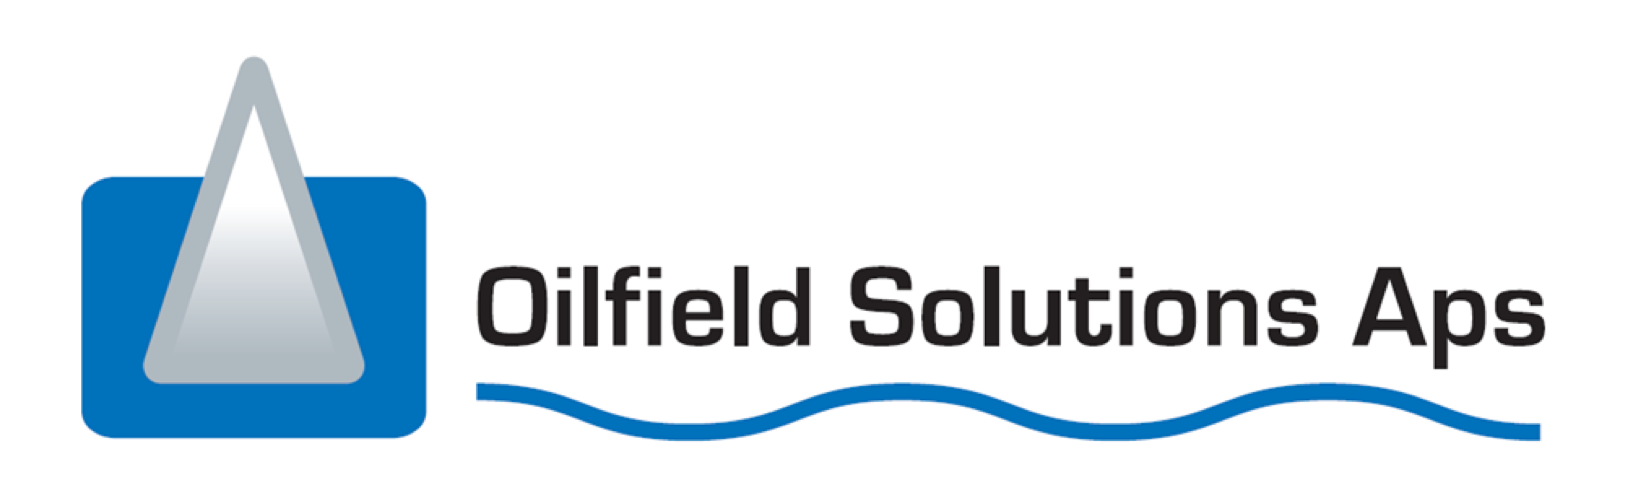 Oilfield Solutions ApS sponsor for Fyrskibet Esbjerg.png